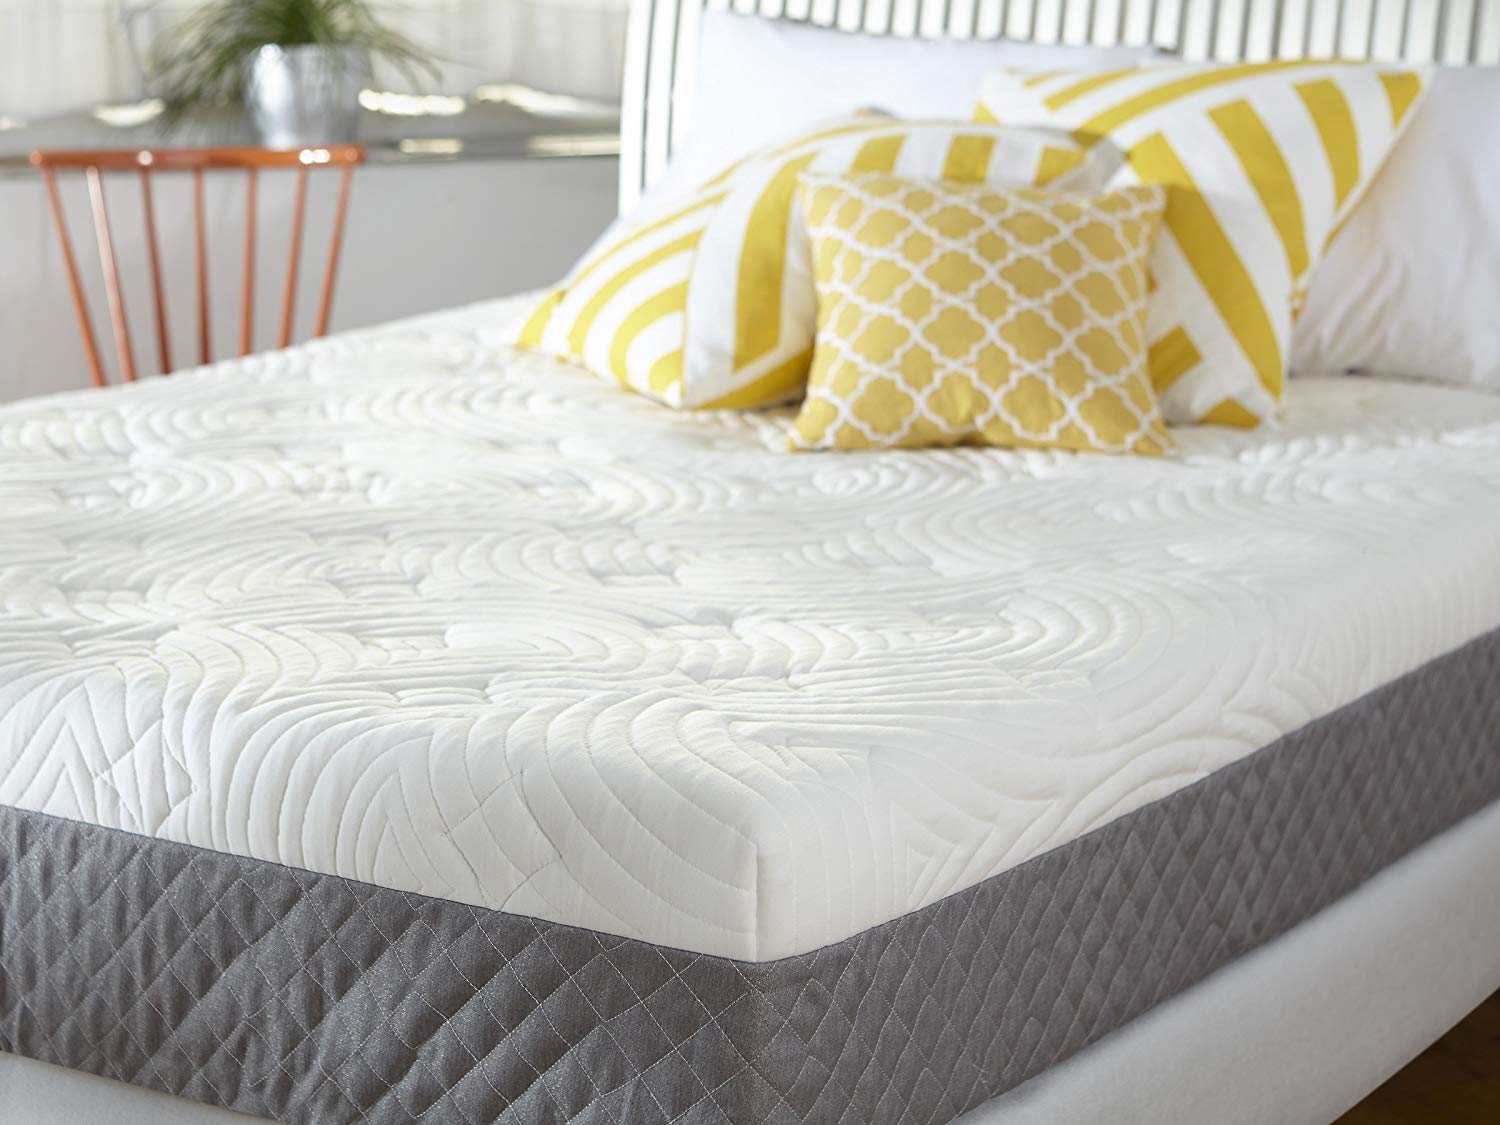 memory foam mattress for side sleeper pain